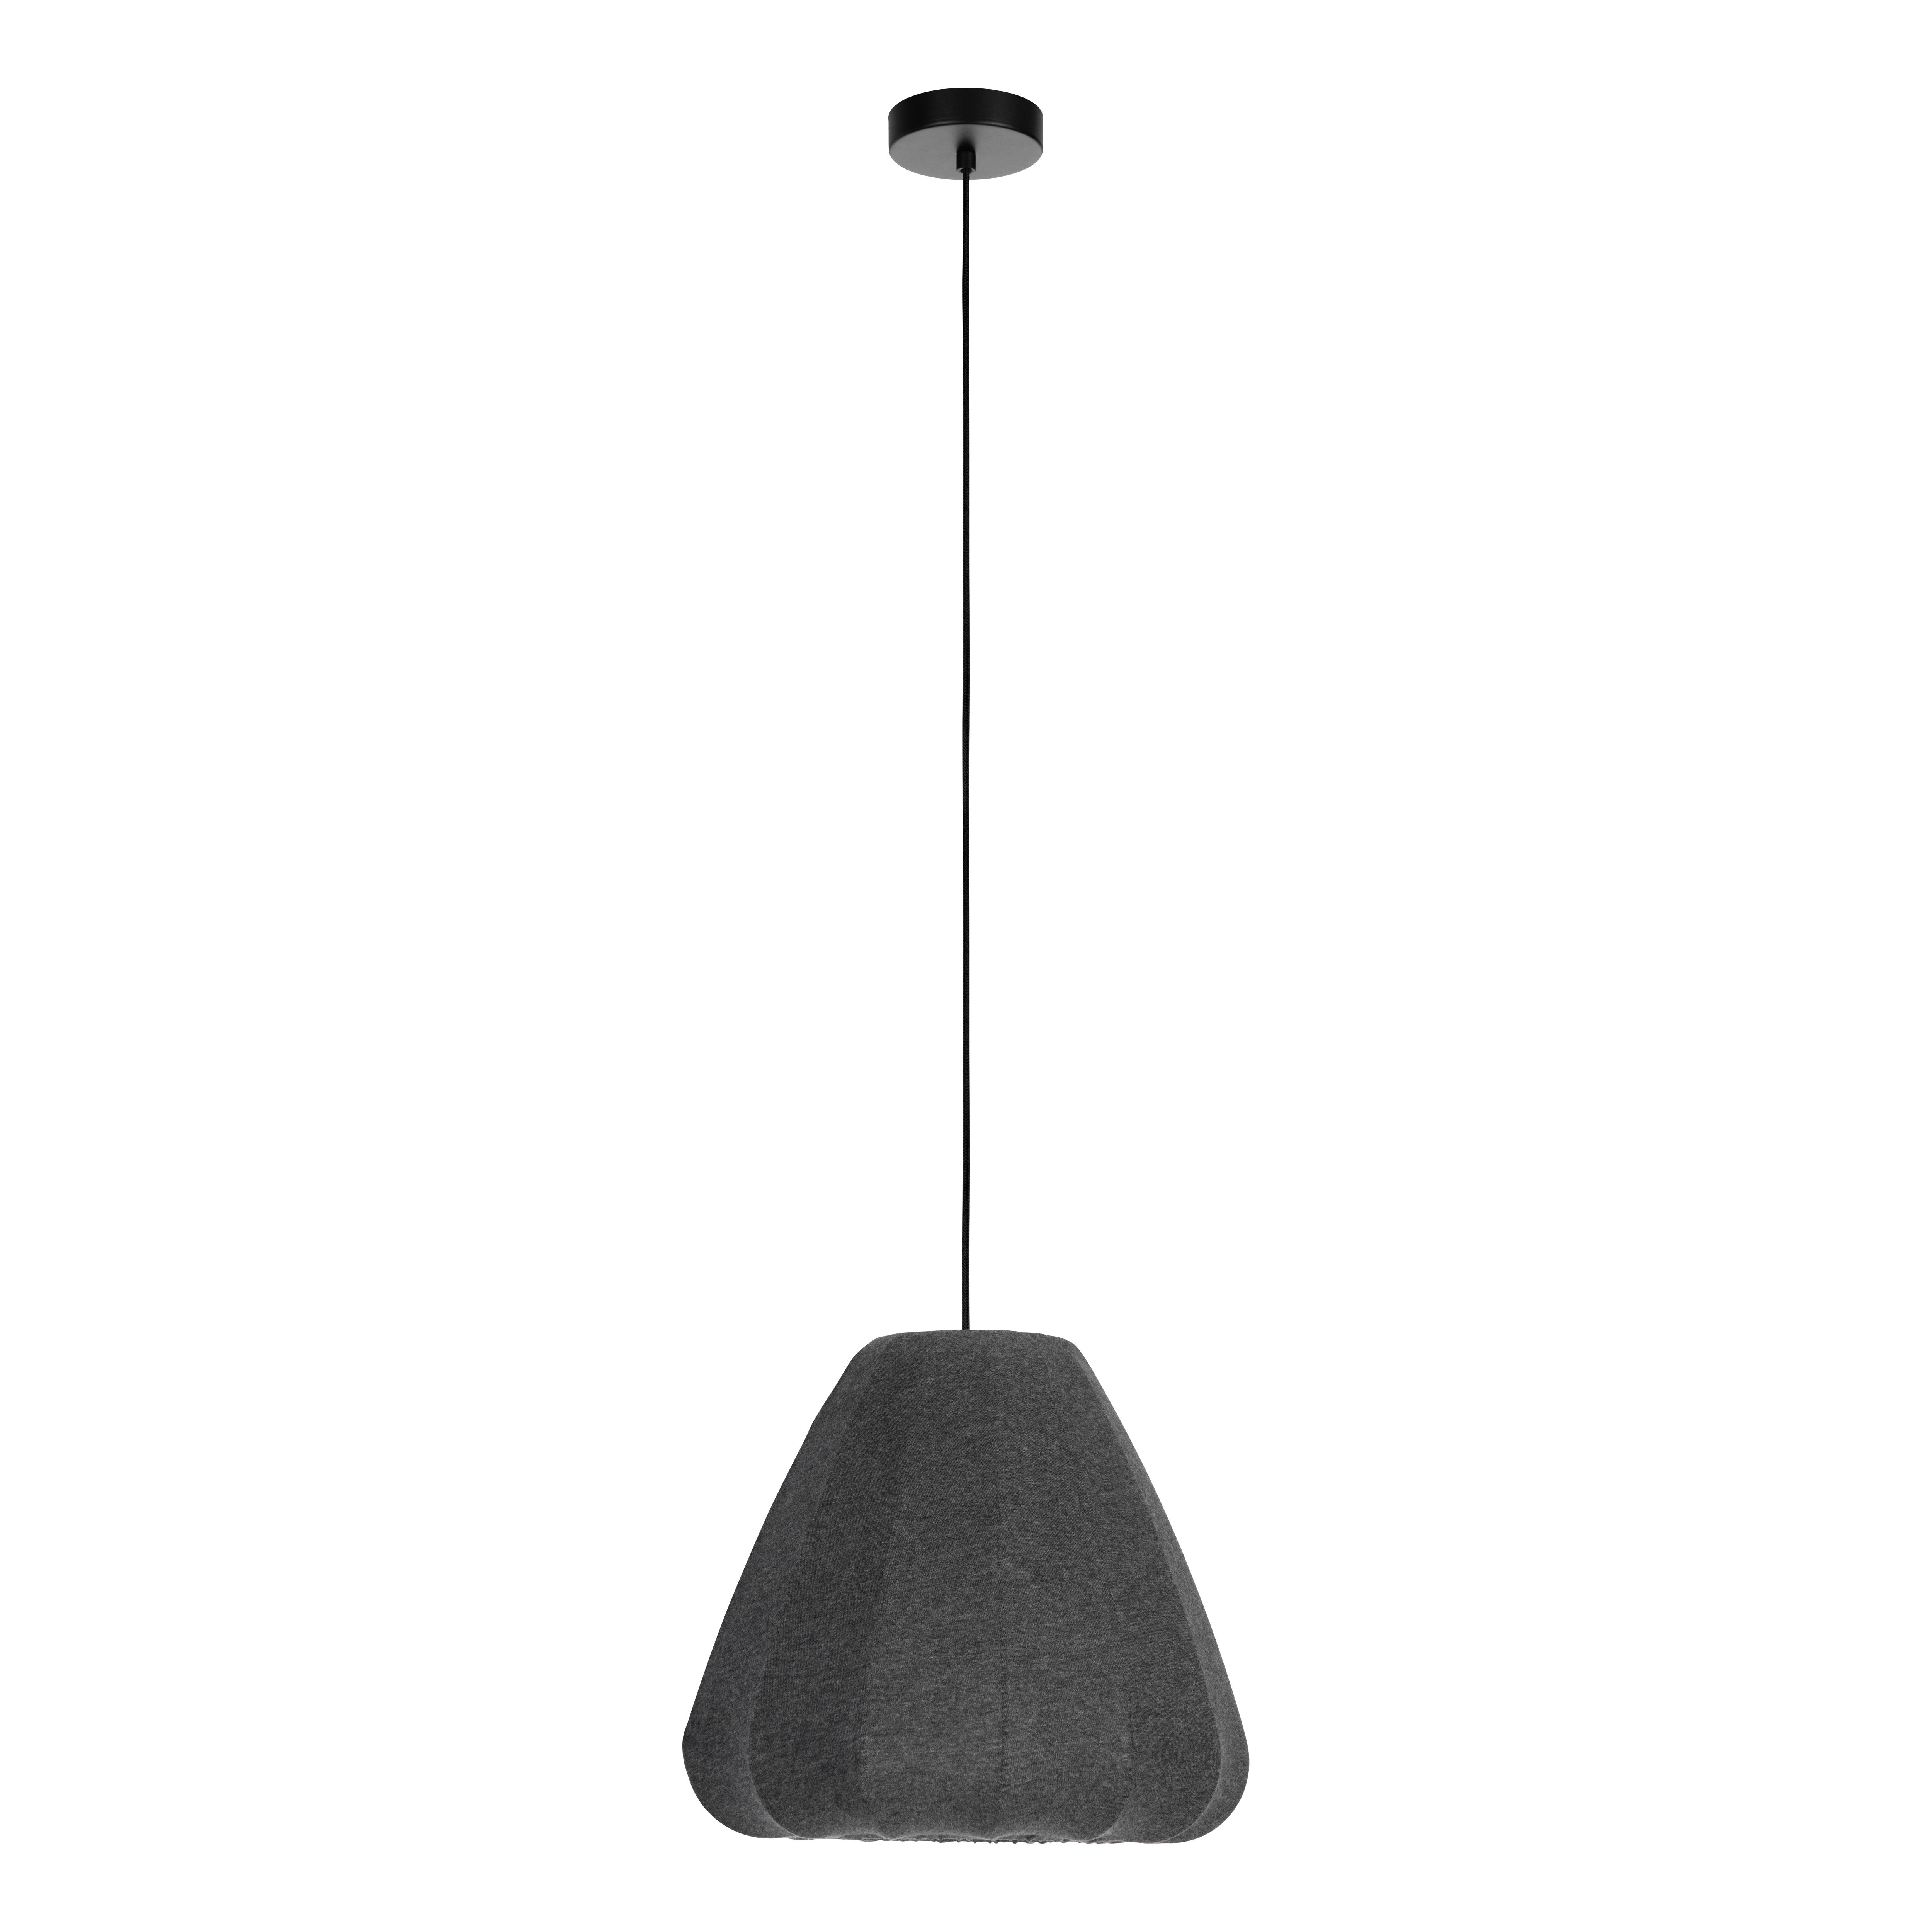 EGLO Barlaston Hanglamp - E27 - Ø 35 cm - Zwart/Grijs - Textiel